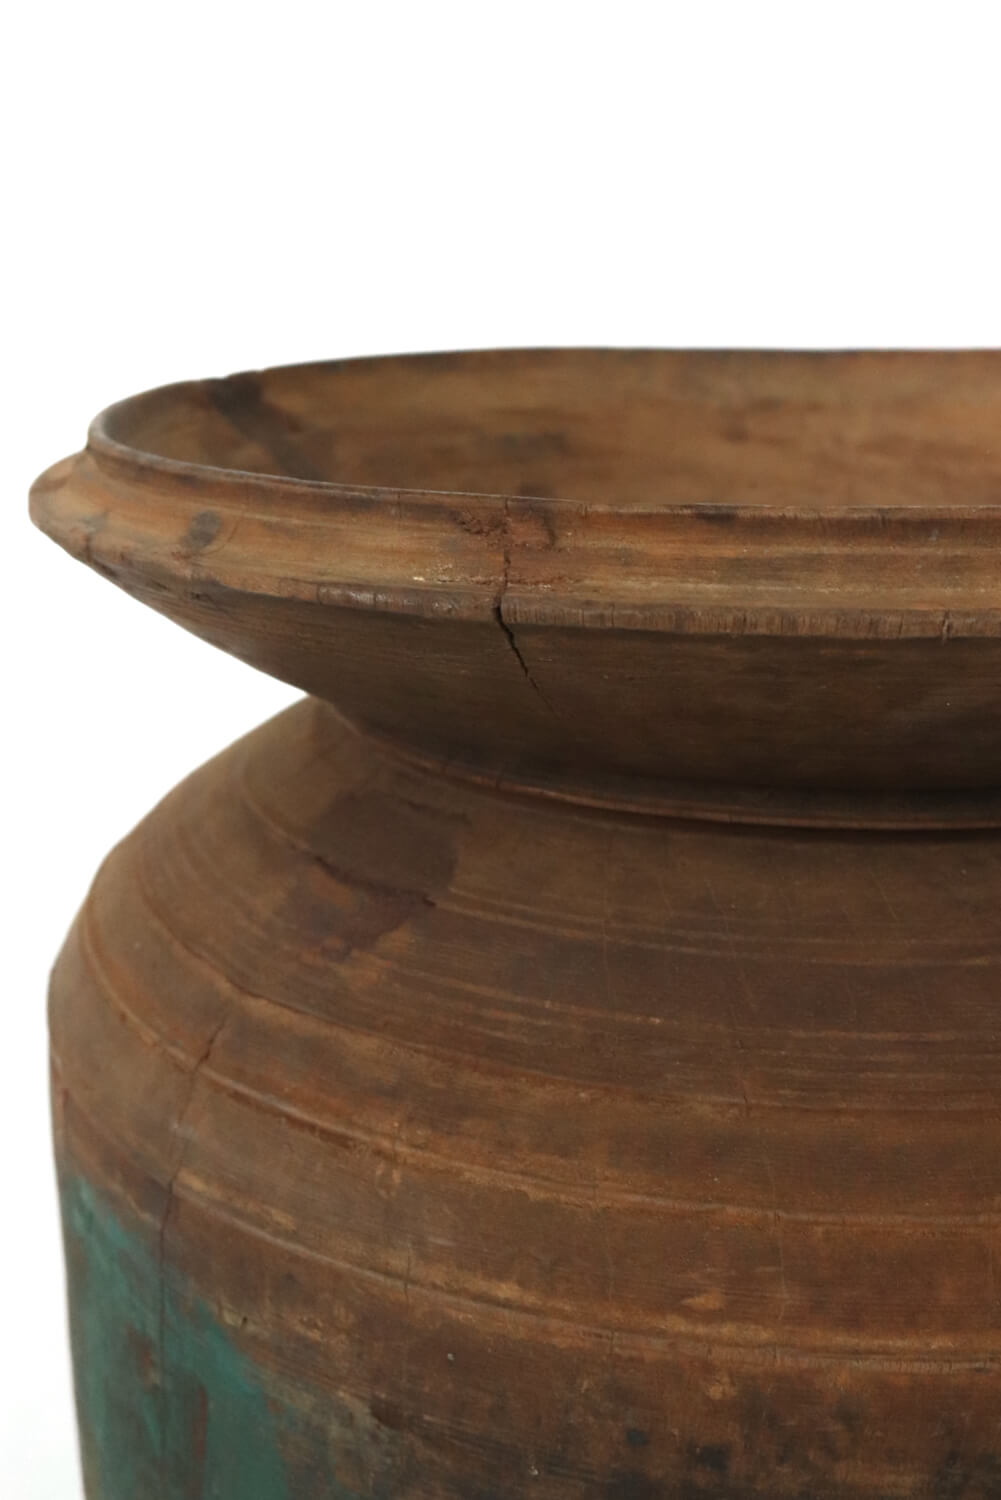 Großer Nepal Pott aus Holz antik 40xø31